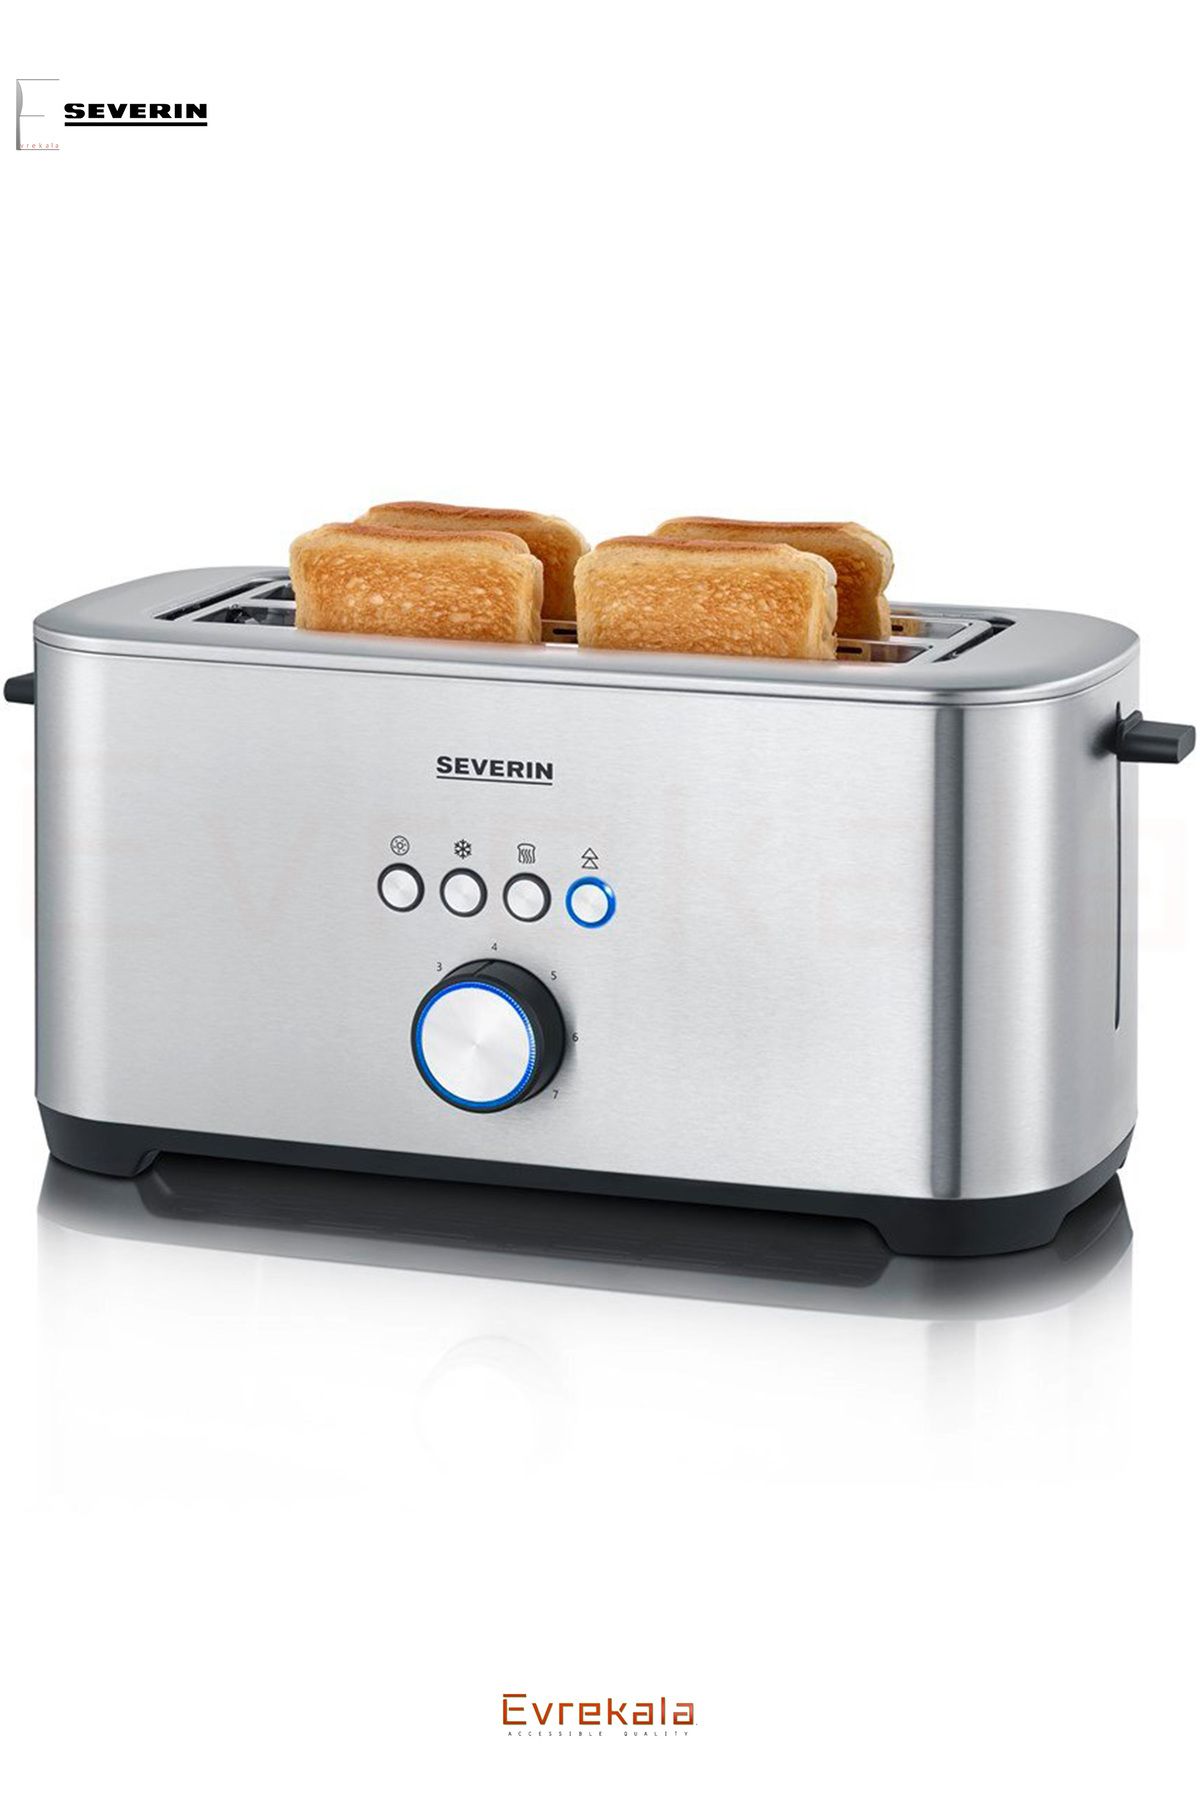 Severin Evrekala Shop Ekmek Kızartma Makinesi Severin 4'lü Toaster Inox